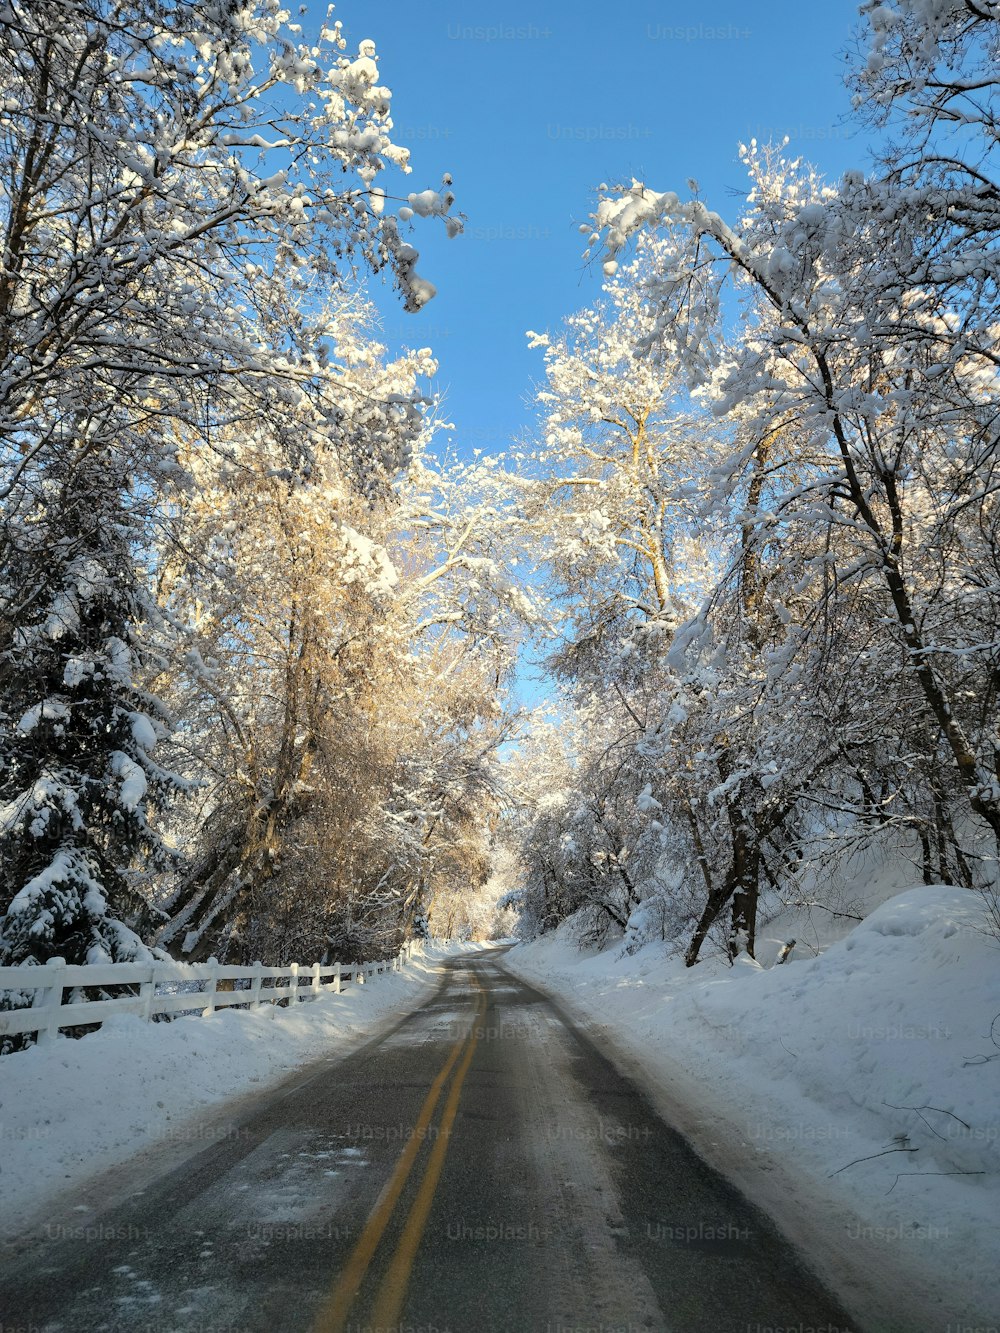 Un camino con nieve en el suelo y árboles a ambos lados